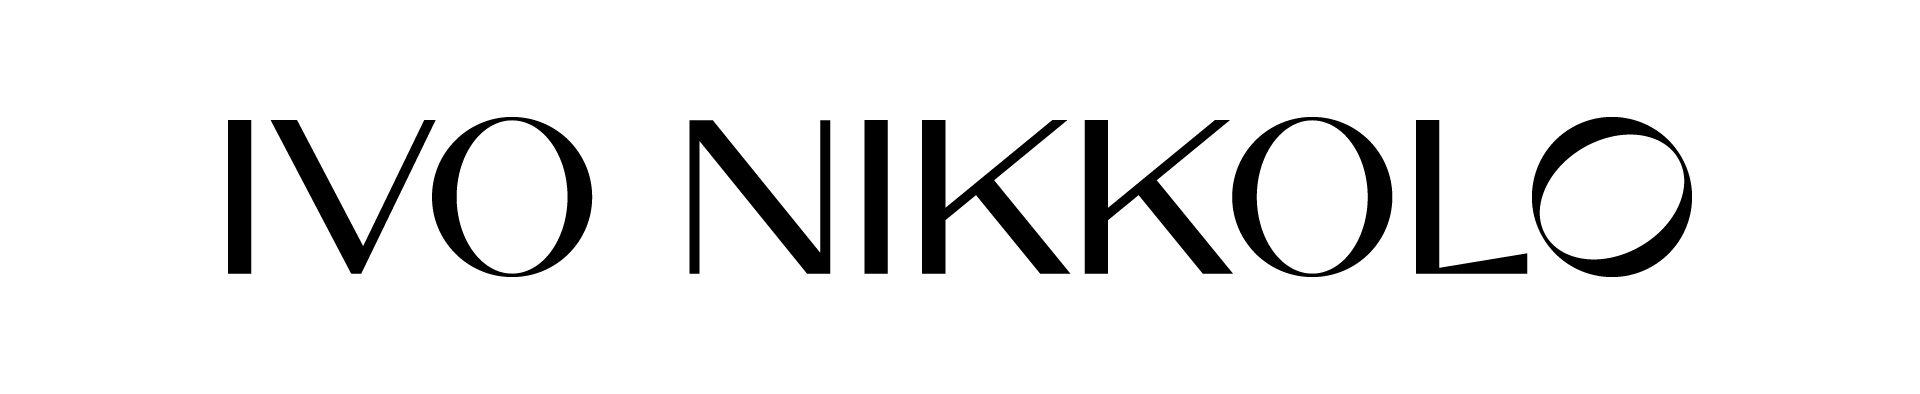 partners logos for 3 landingslvplivonikkolo logo black